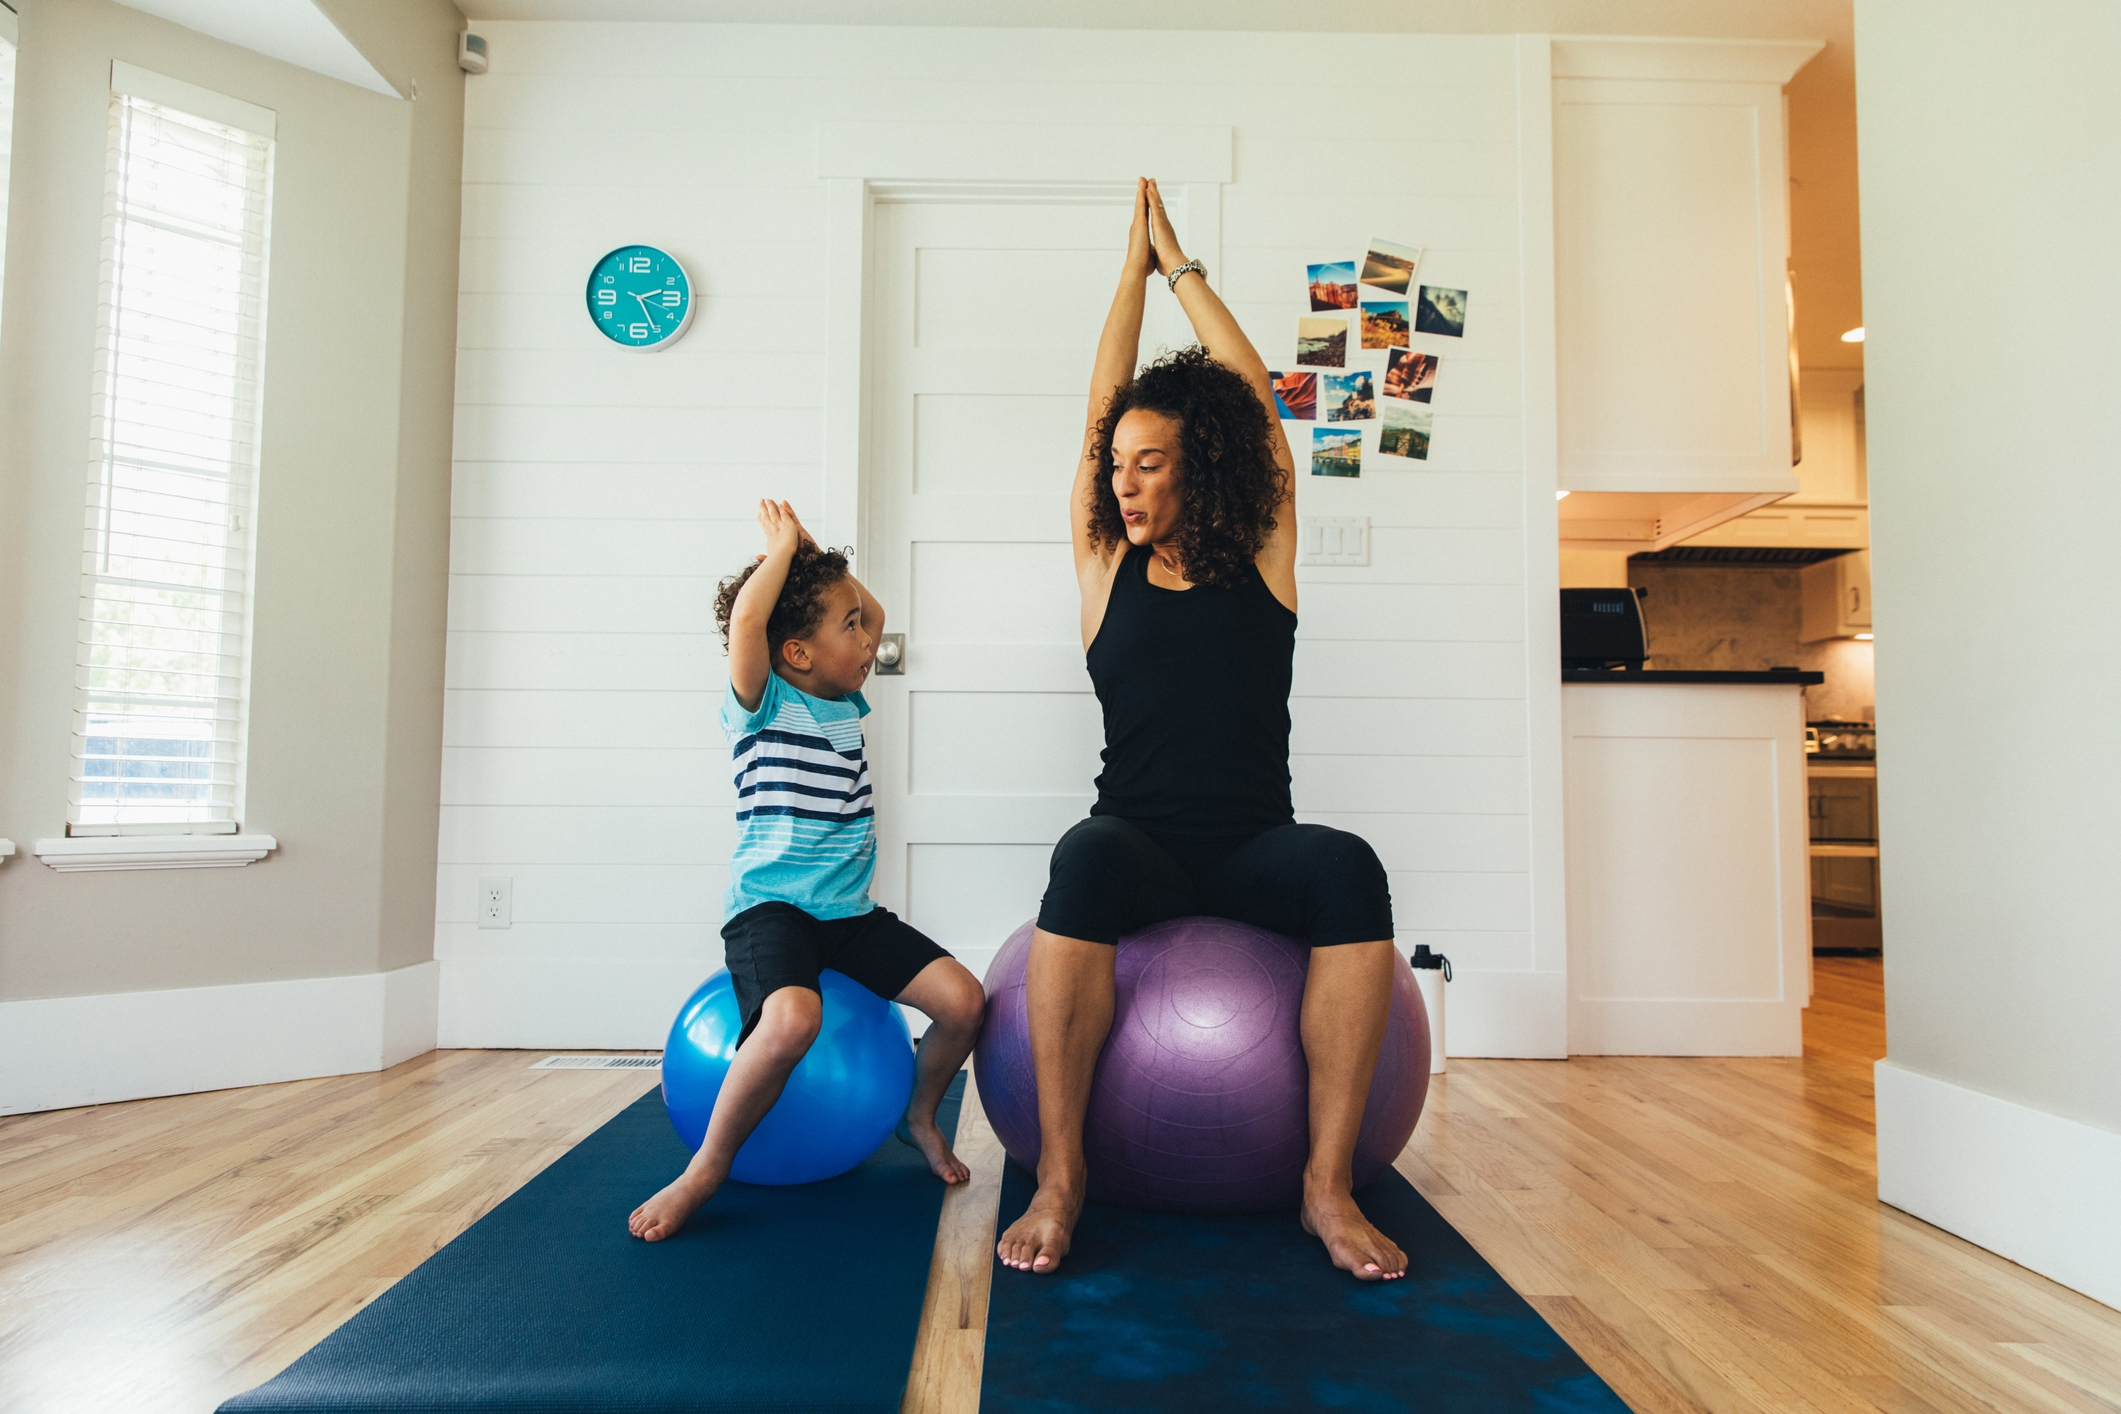 一位母亲在家里和她幼小的儿子在健身球上锻炼。她正在通过适当的拉伸和锻炼来教男孩健康生活方式的重要性。